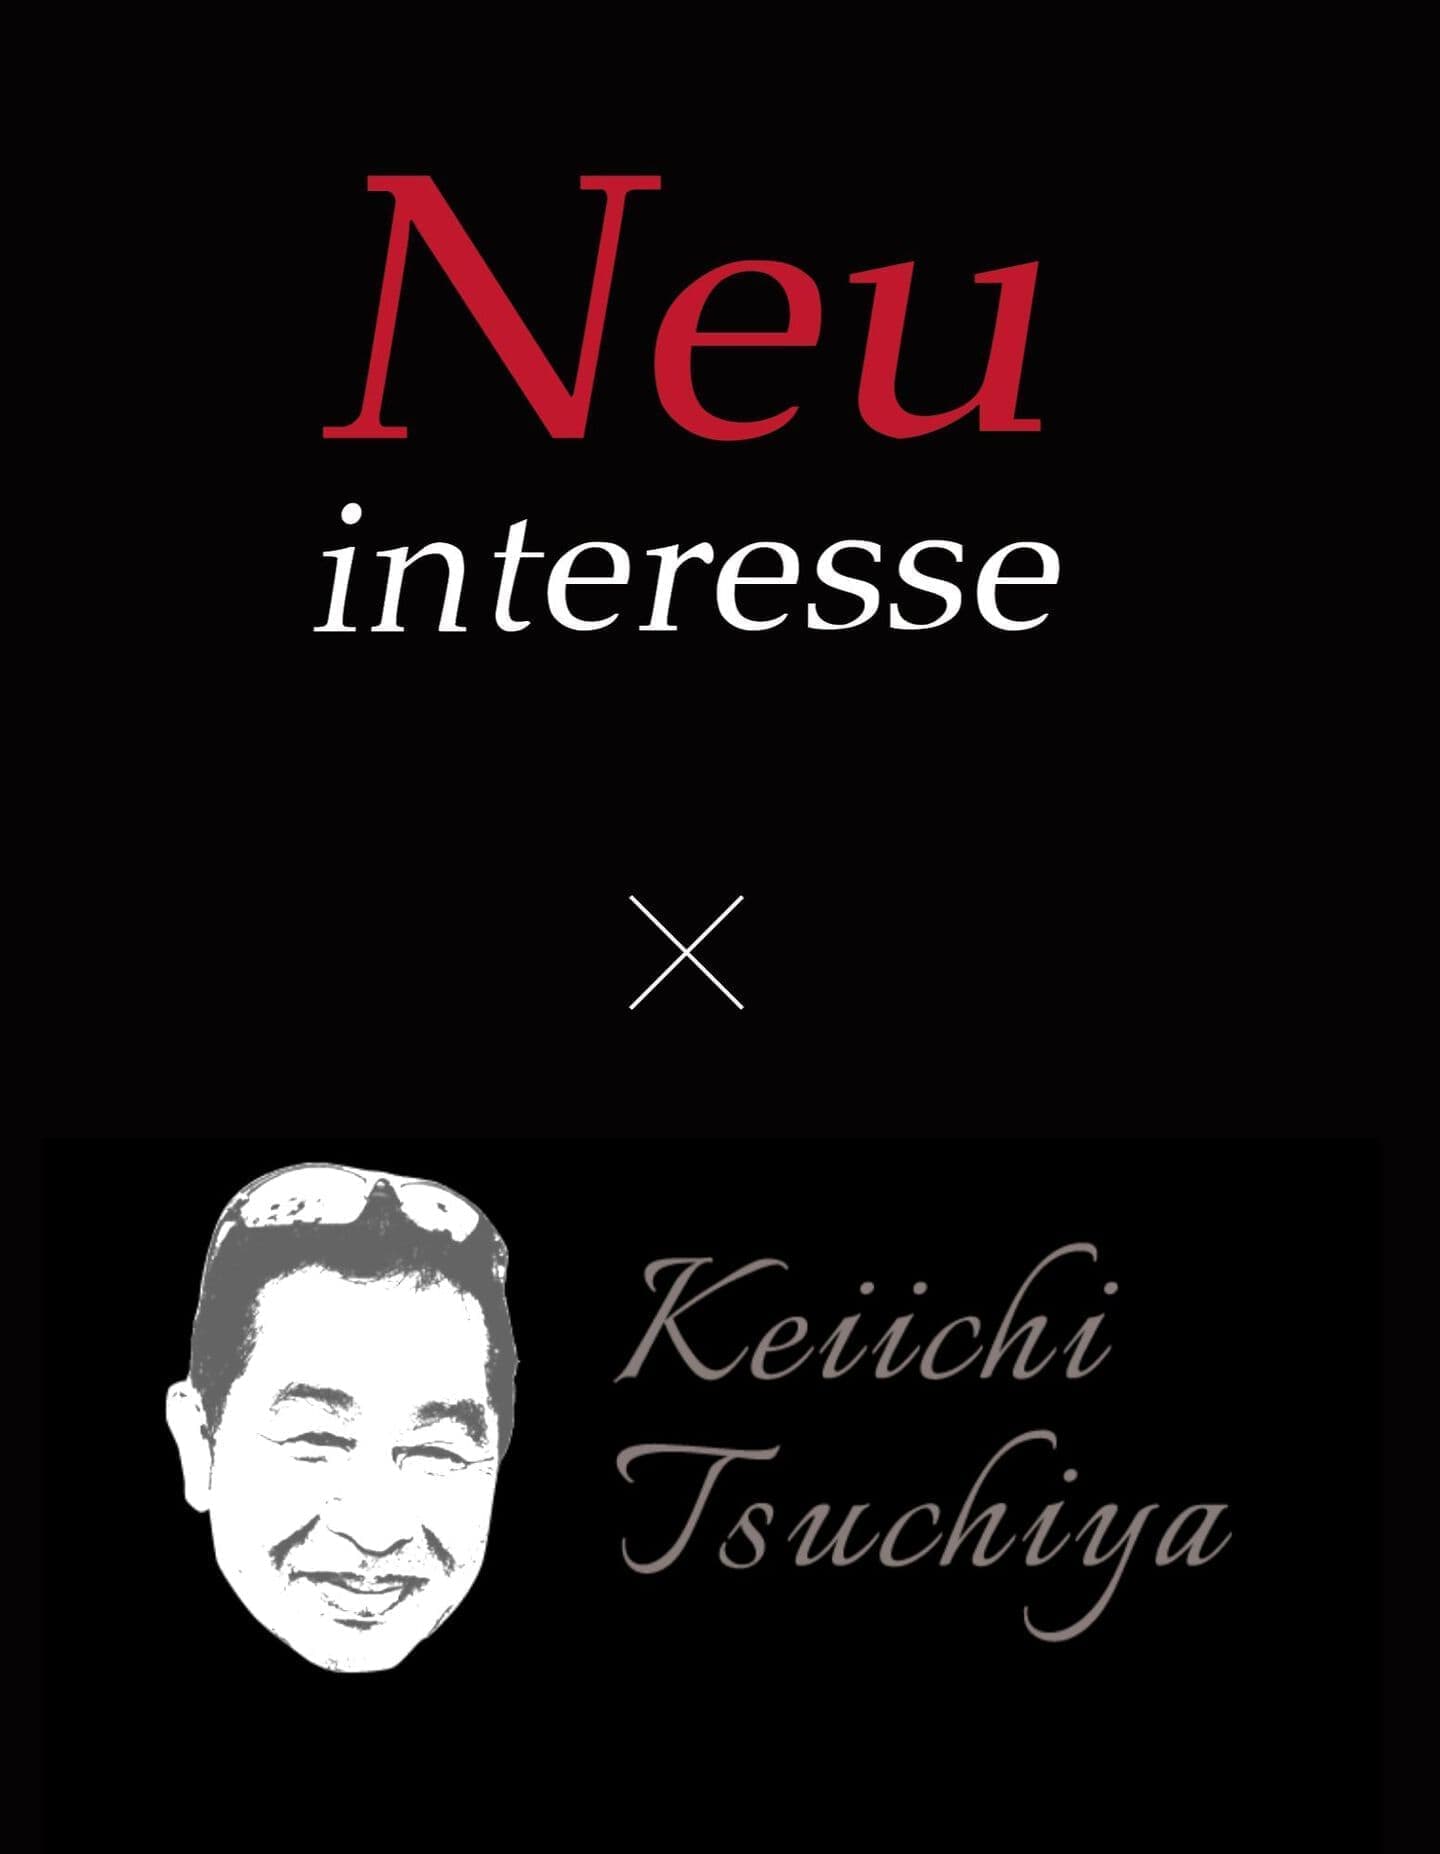 ノイインテレッセcollaboration with KEIICHI TSUCHIYA